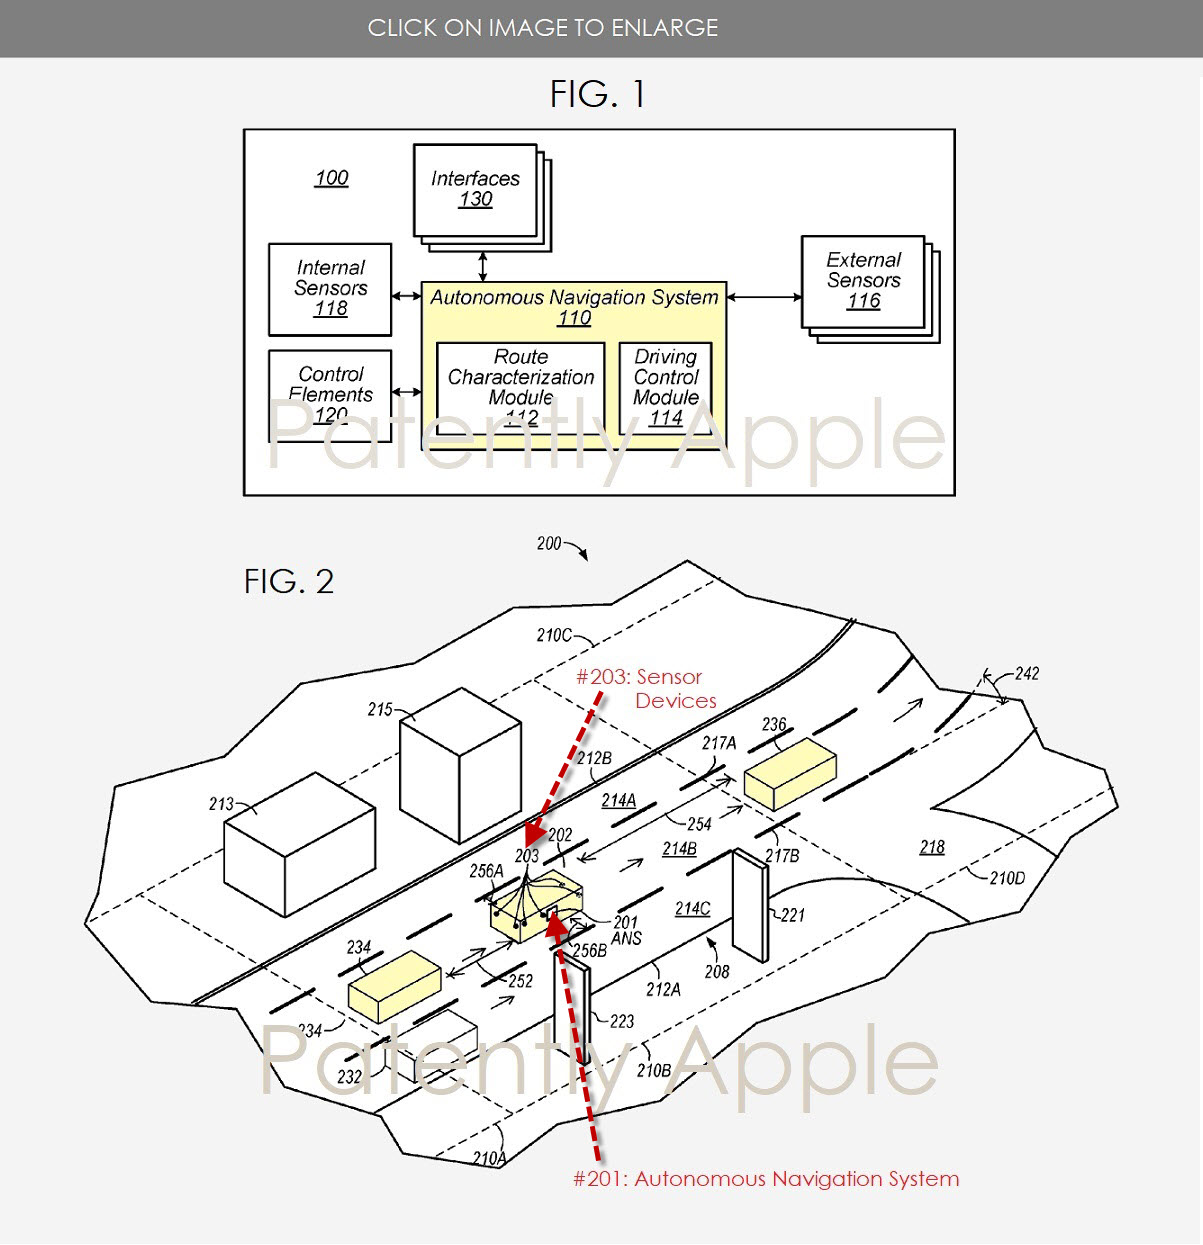 Descrizione del brevetto per automobile Apple a guida autonoma